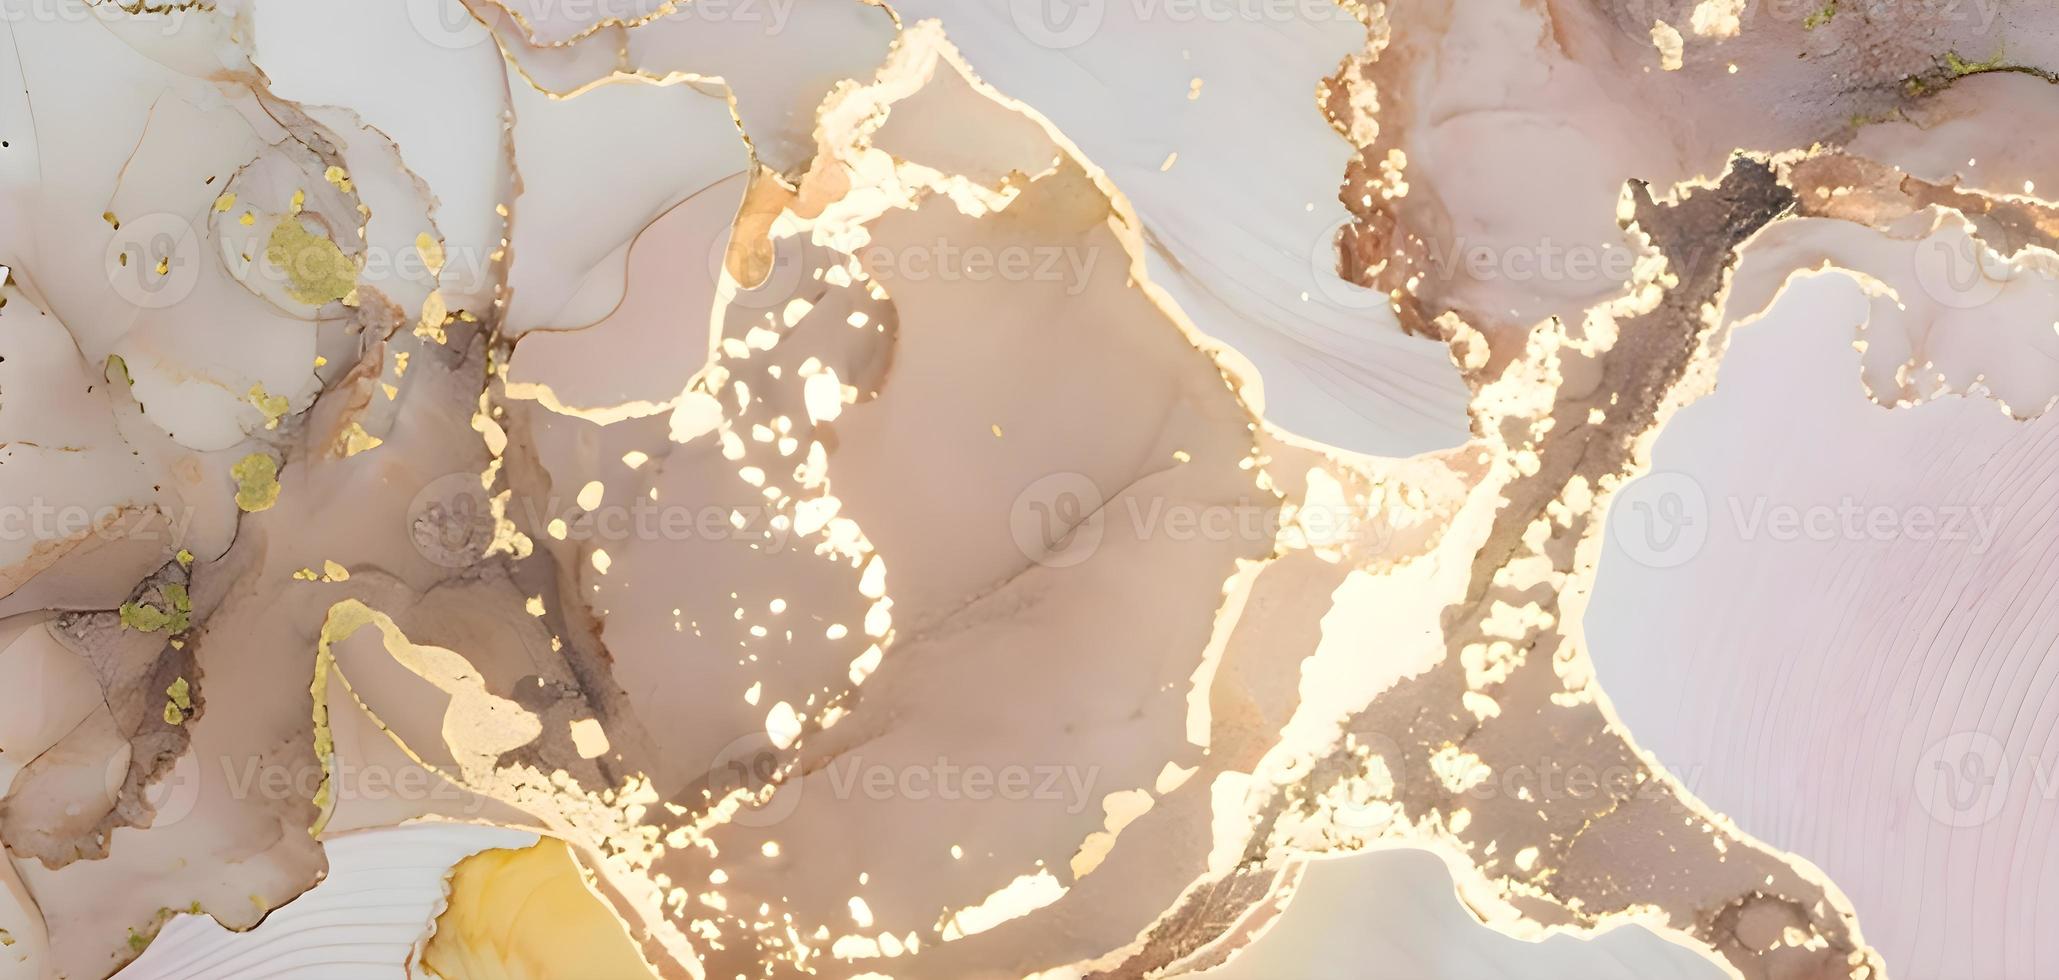 fond abstrait de texture de marbre beige ou crème. surface en marbre naturel détaillée. photo